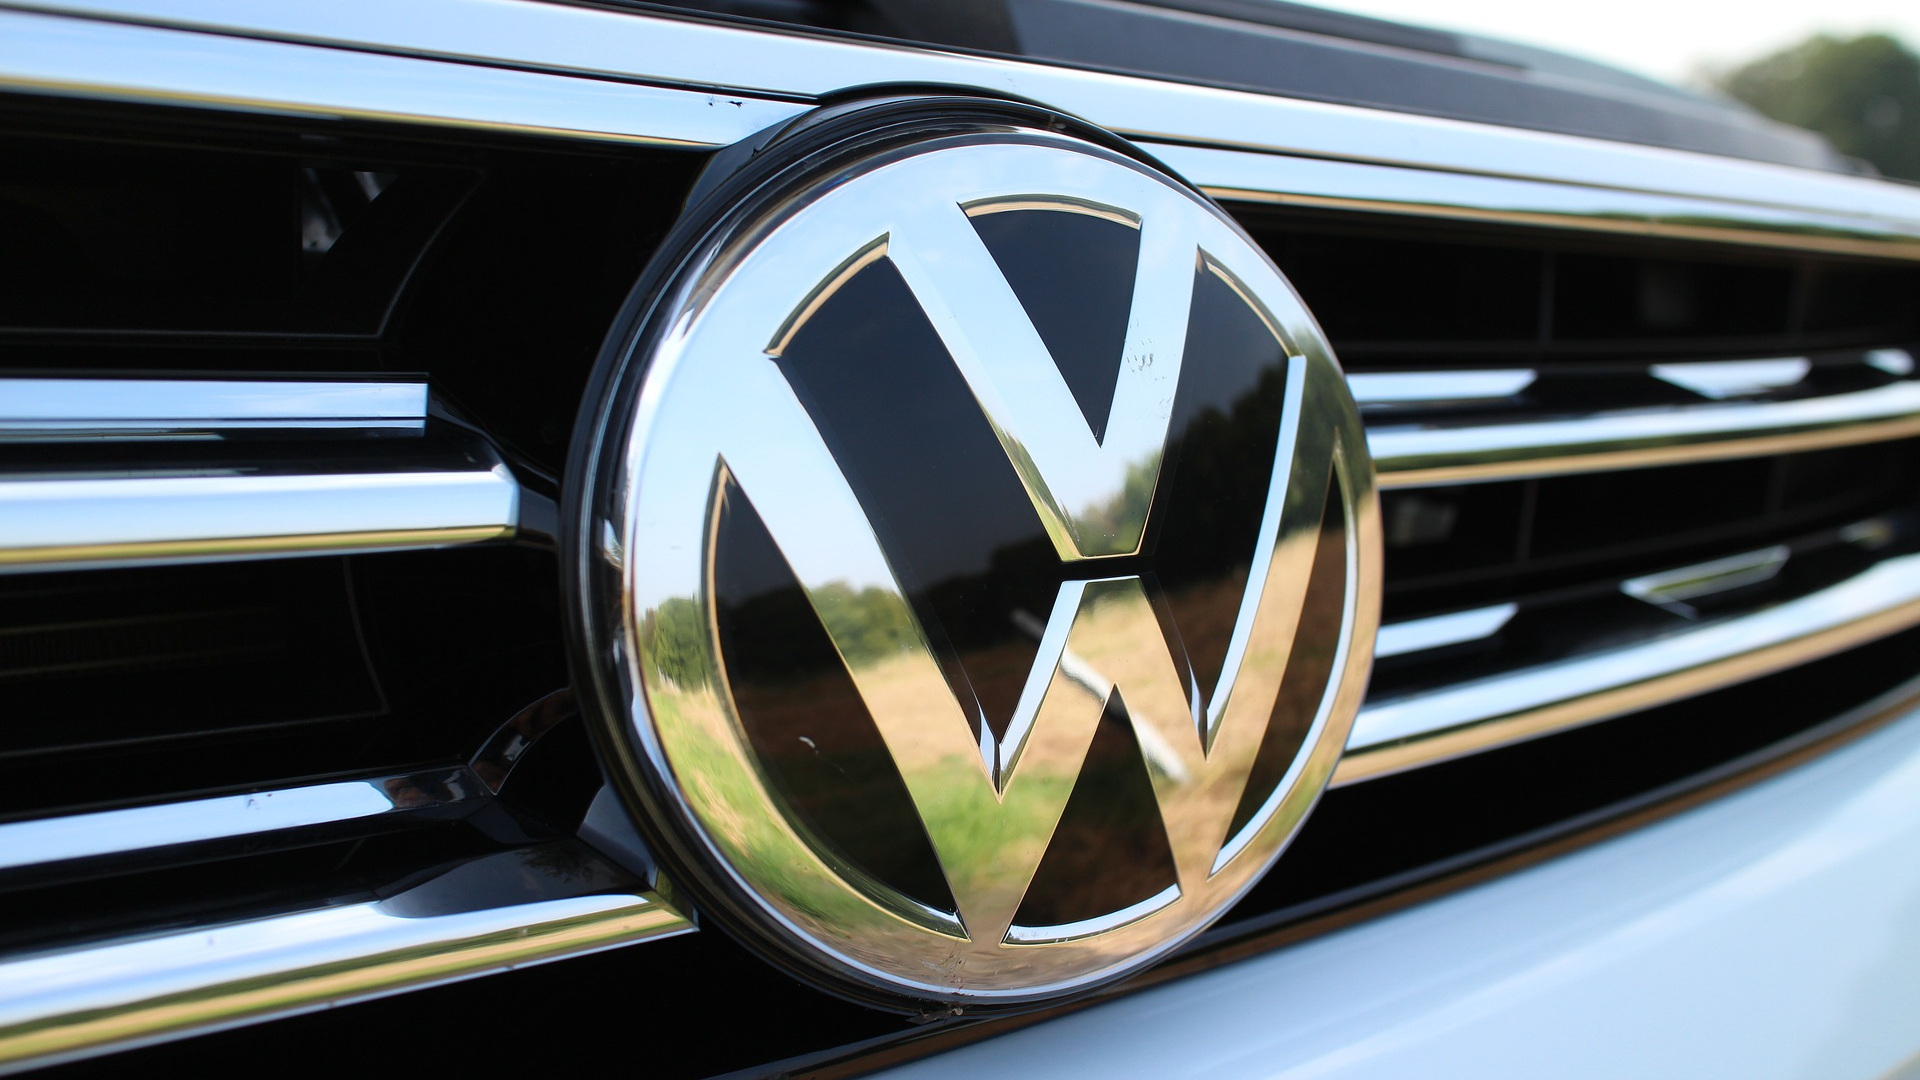 Volkswagen invertira 4.000 millones y creara 2.000 empleos.1920